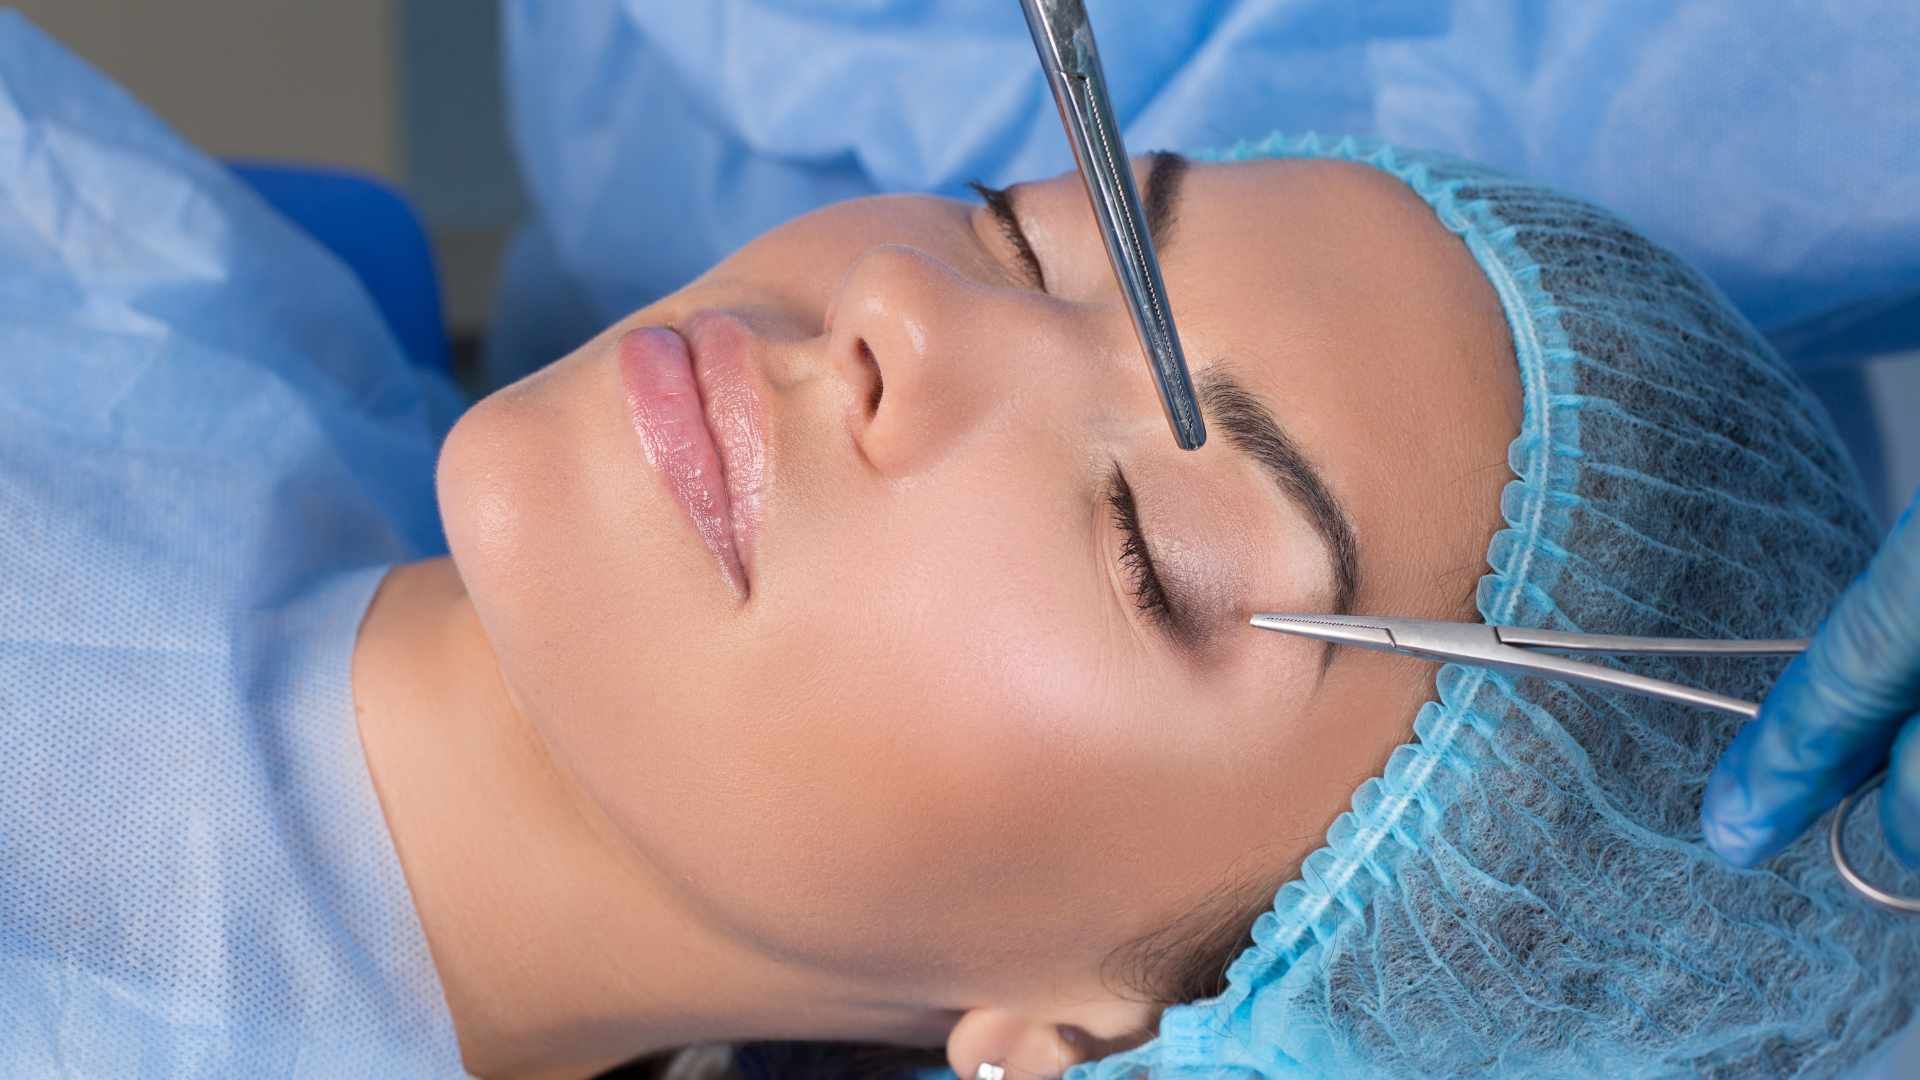 رفع افتادگی پلک به روش جراحی بلفاروپلاستی (پلک بالا) دکتر ابوالفضل بهجو در شیراز 1